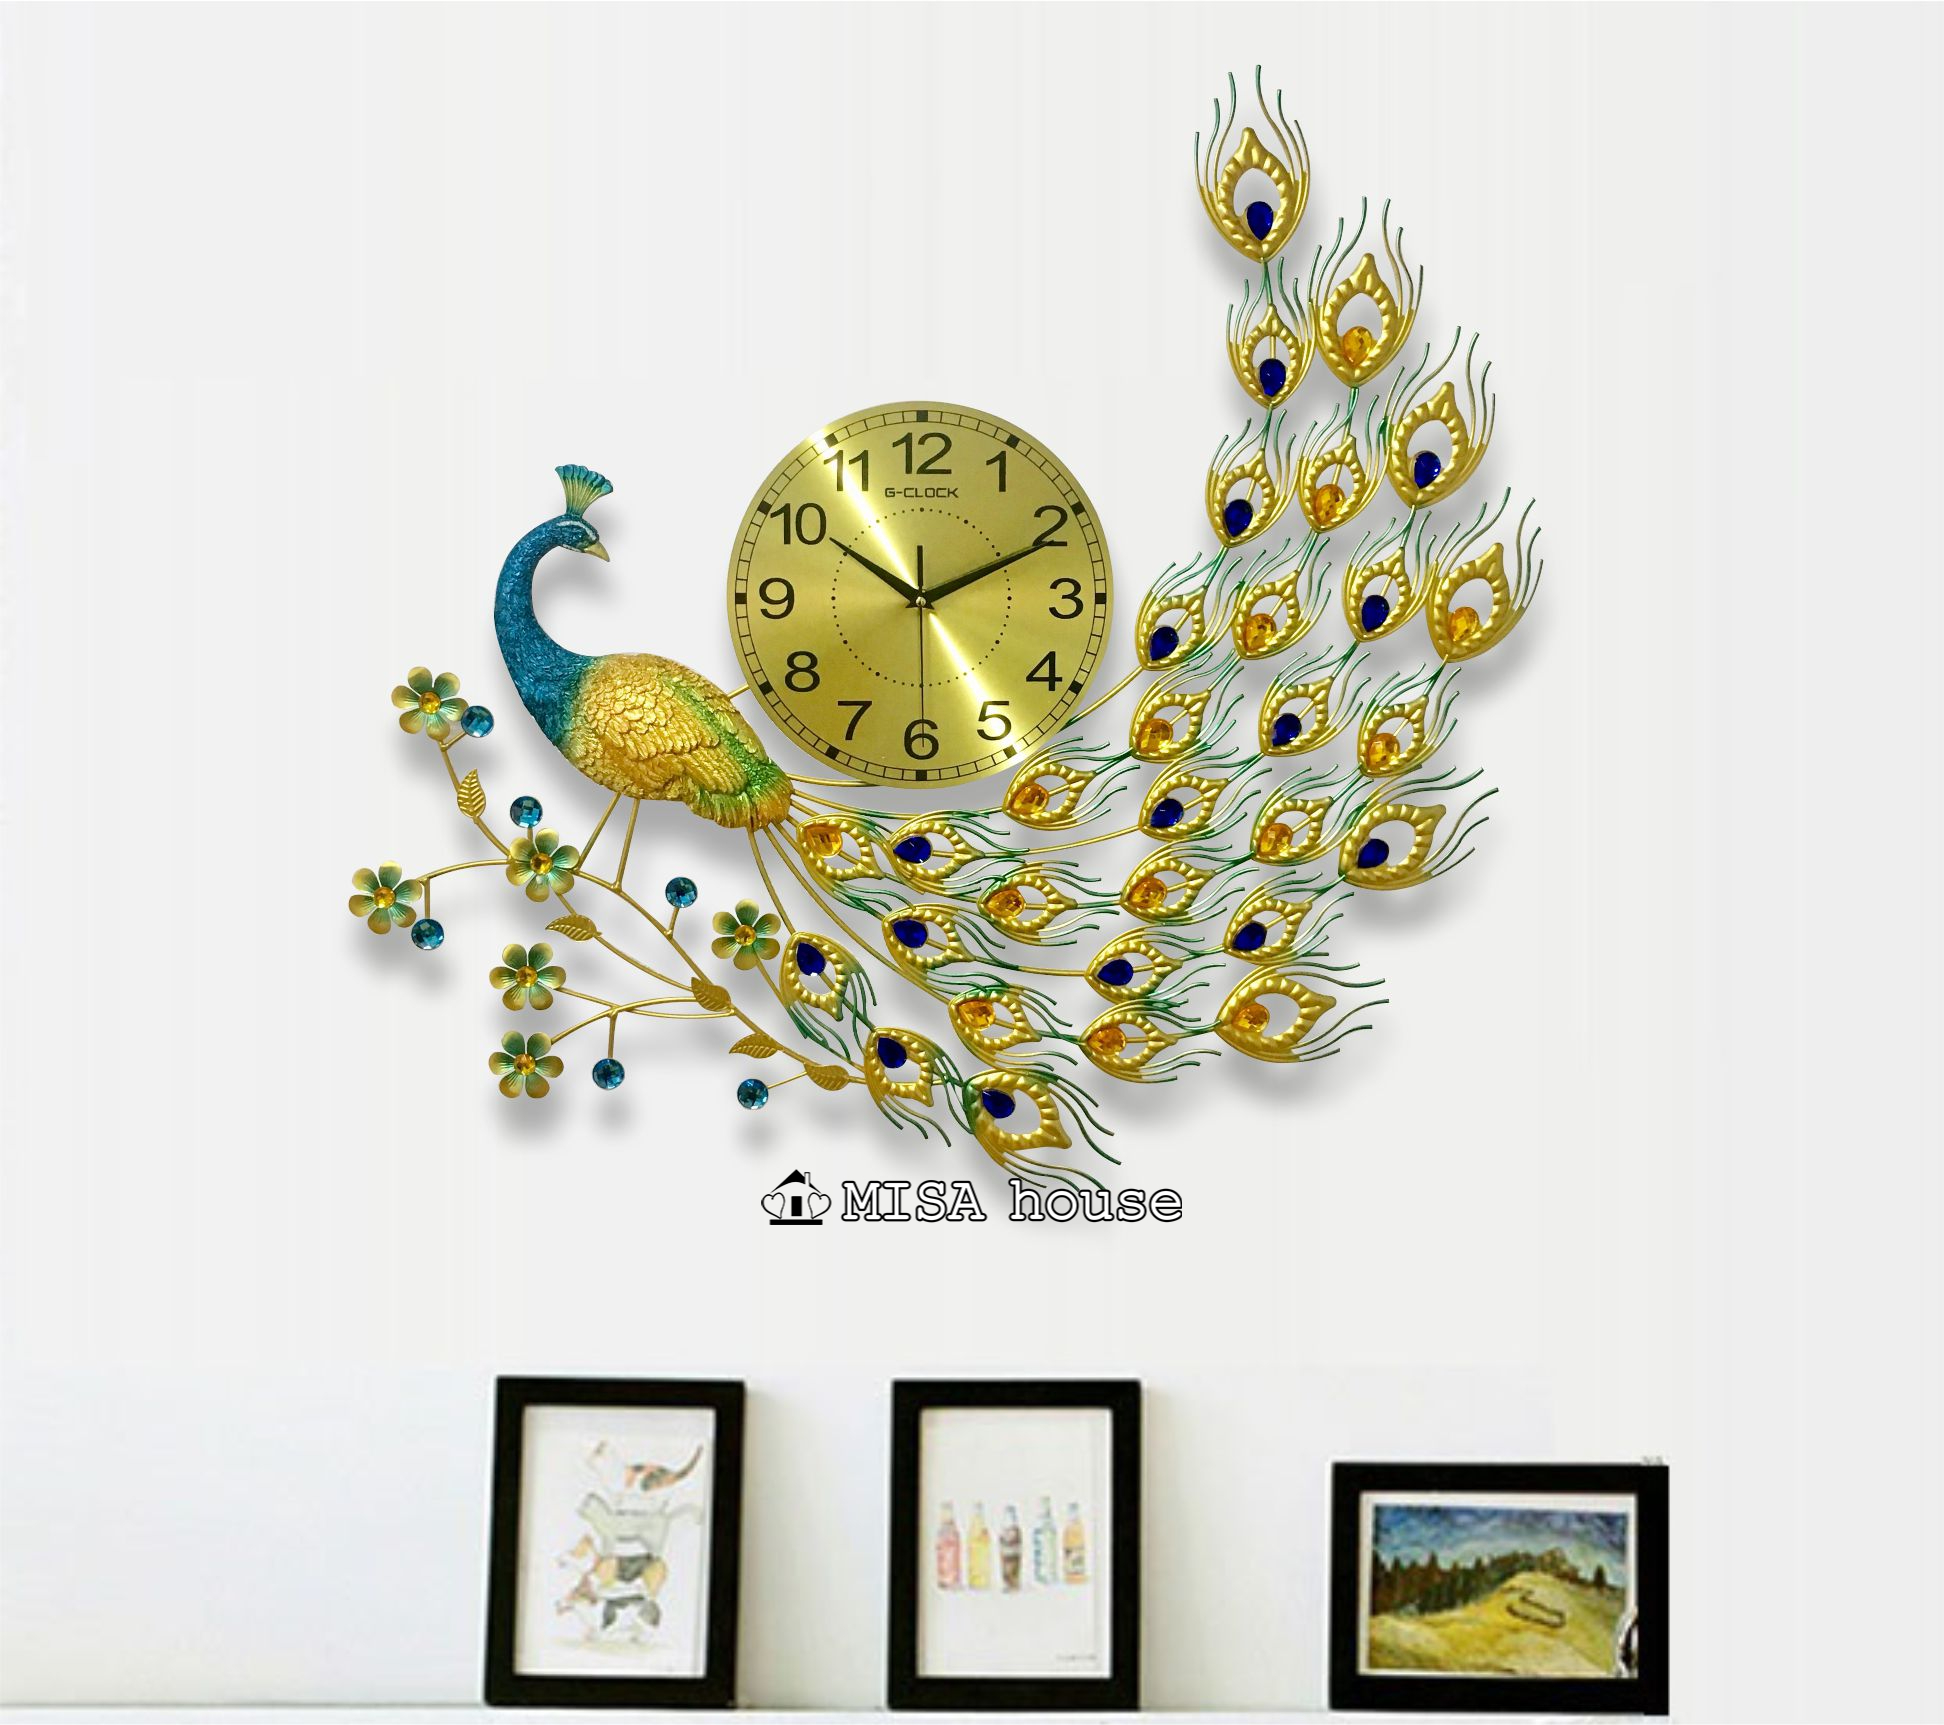 Đồng hồ treo tường trang trí hình công nghệ thuật đẹp - quà tặng tân gia ý nghĩa tốt lành cho nhà mới